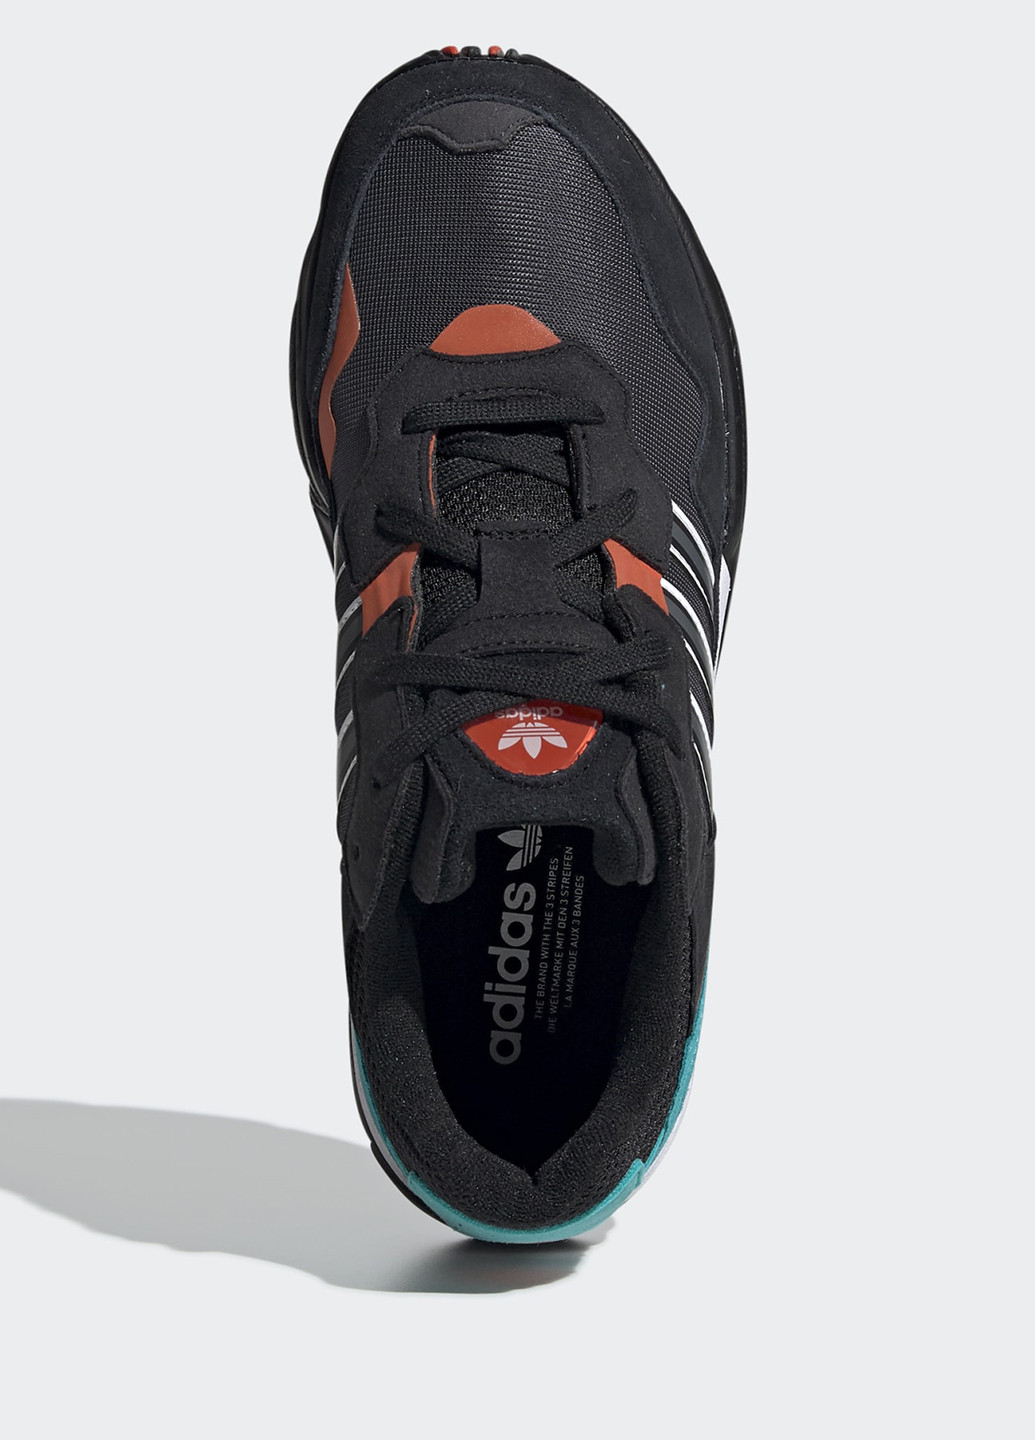 Черные всесезонные кроссовки adidas Yung-96